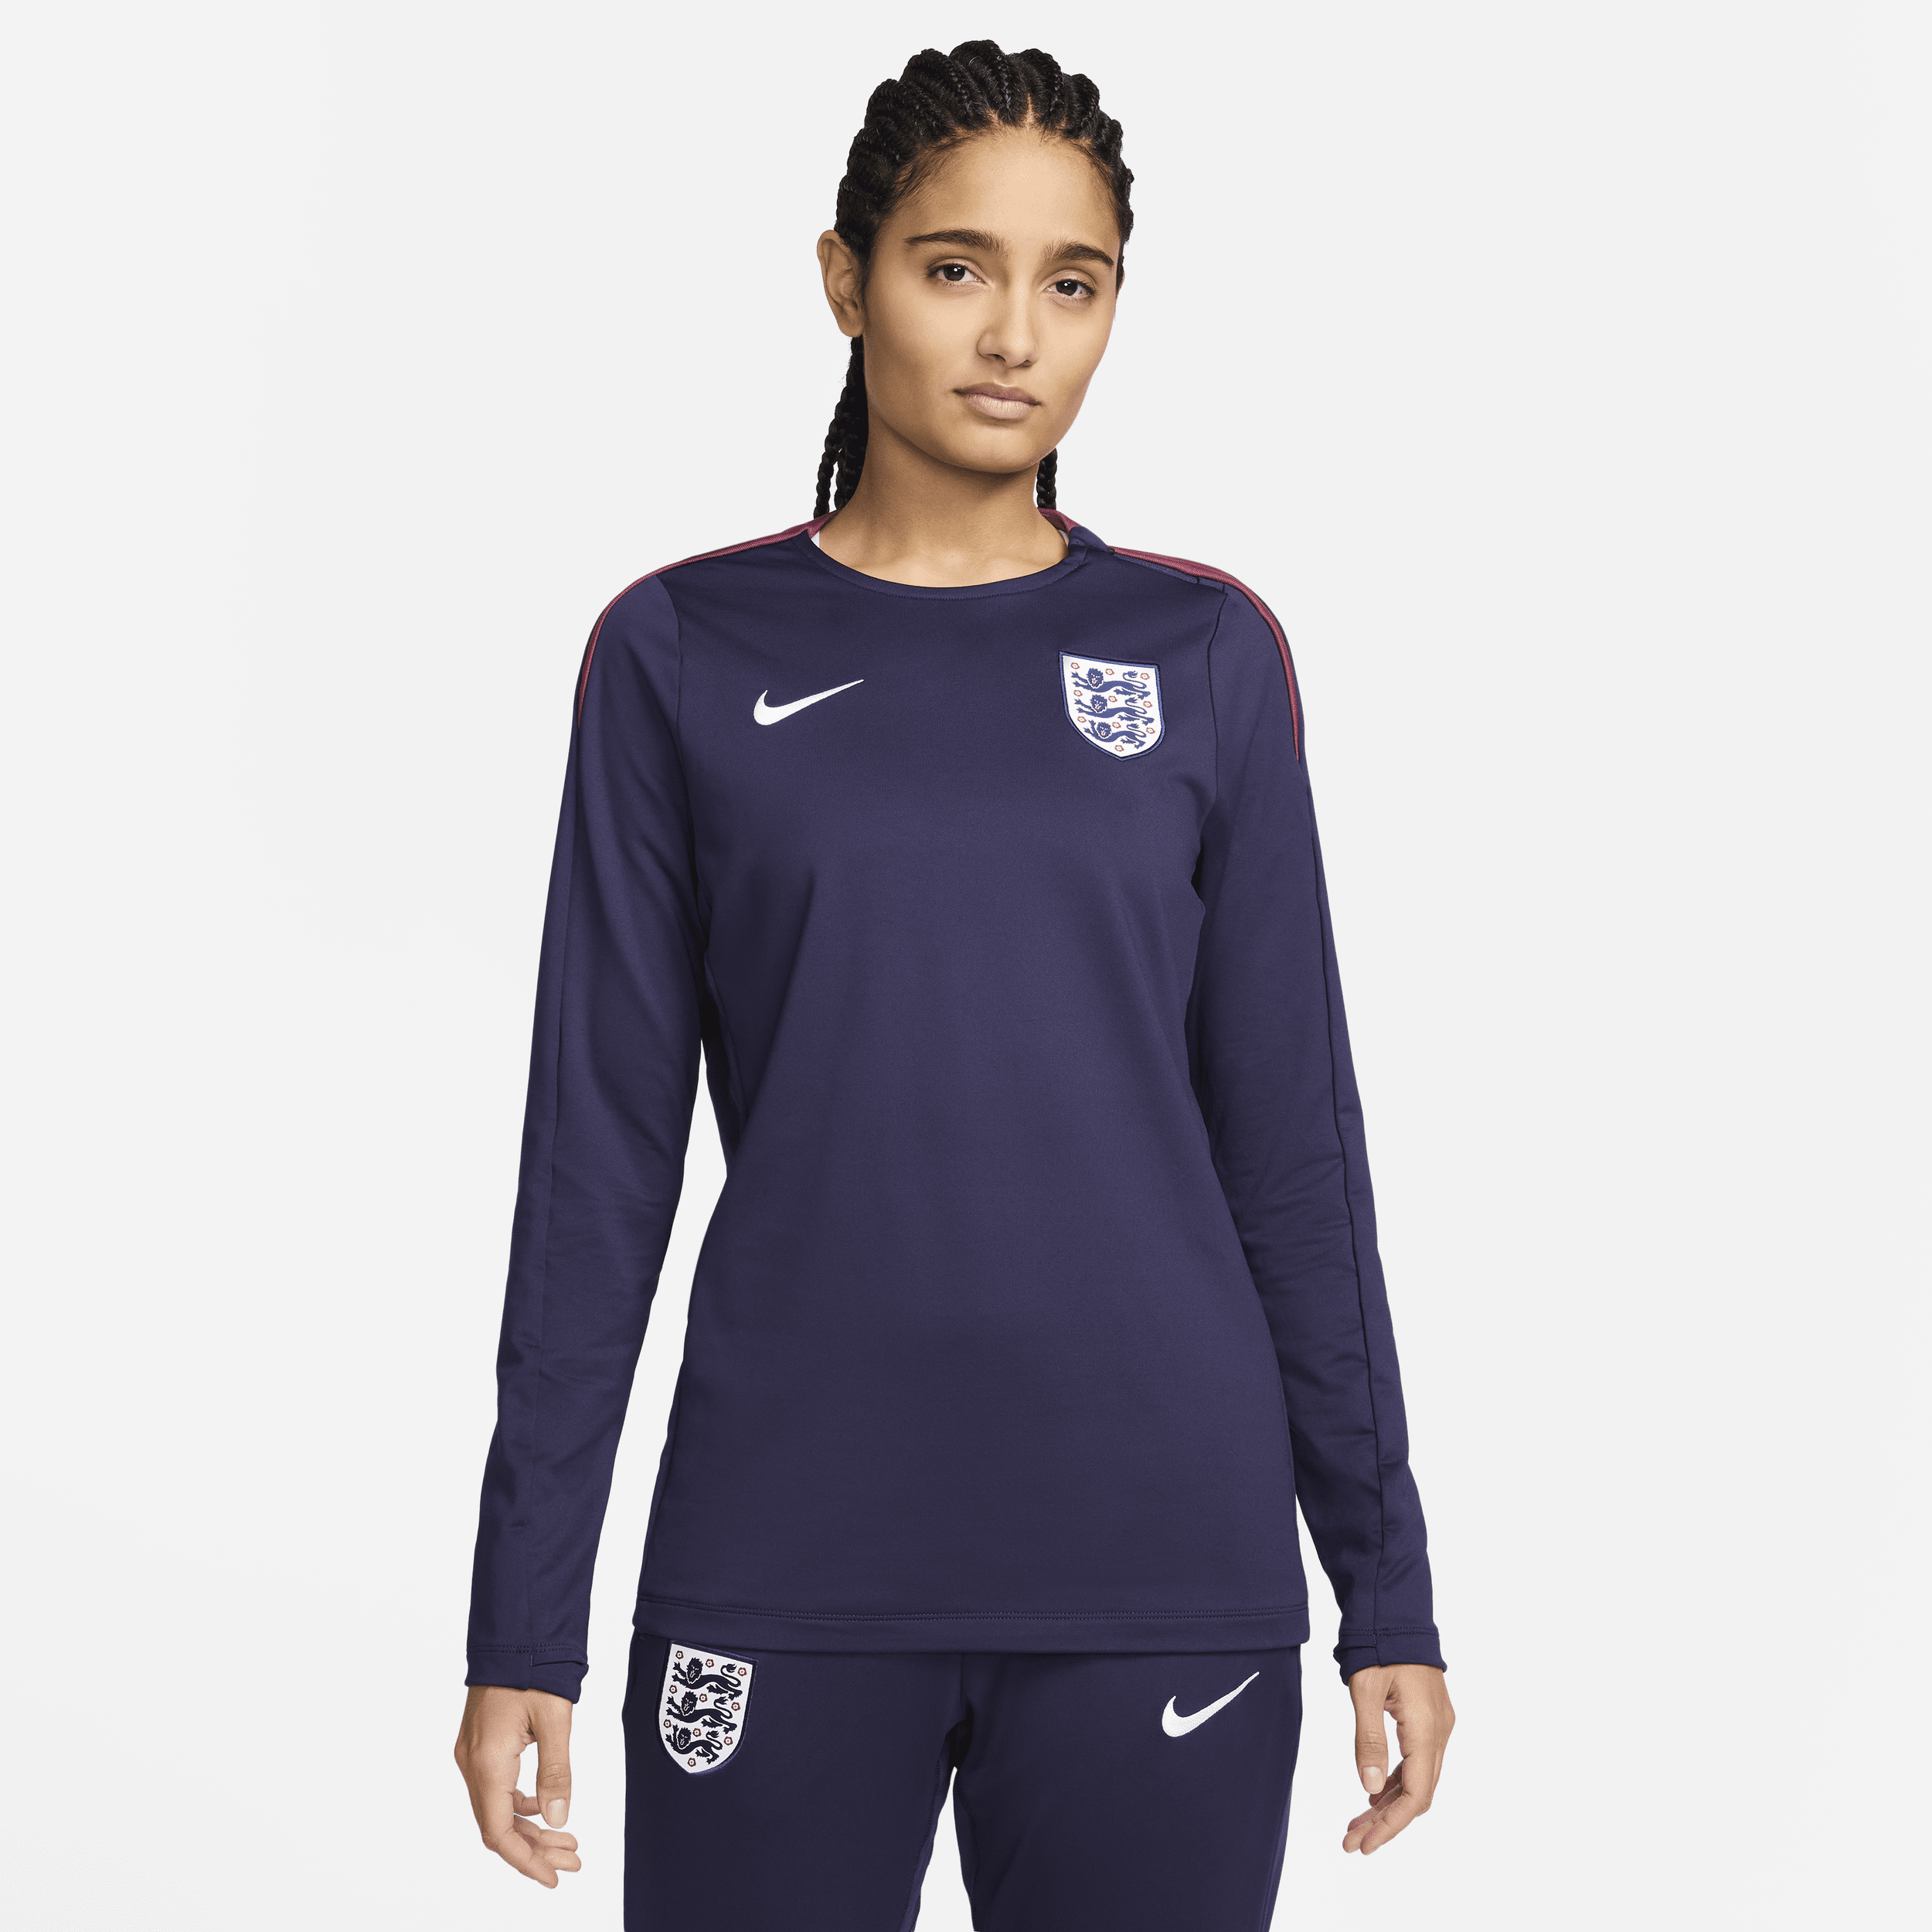 Engeland Strike Nike Dri-FIT voetbaltop met ronde hals voor dames - Paars